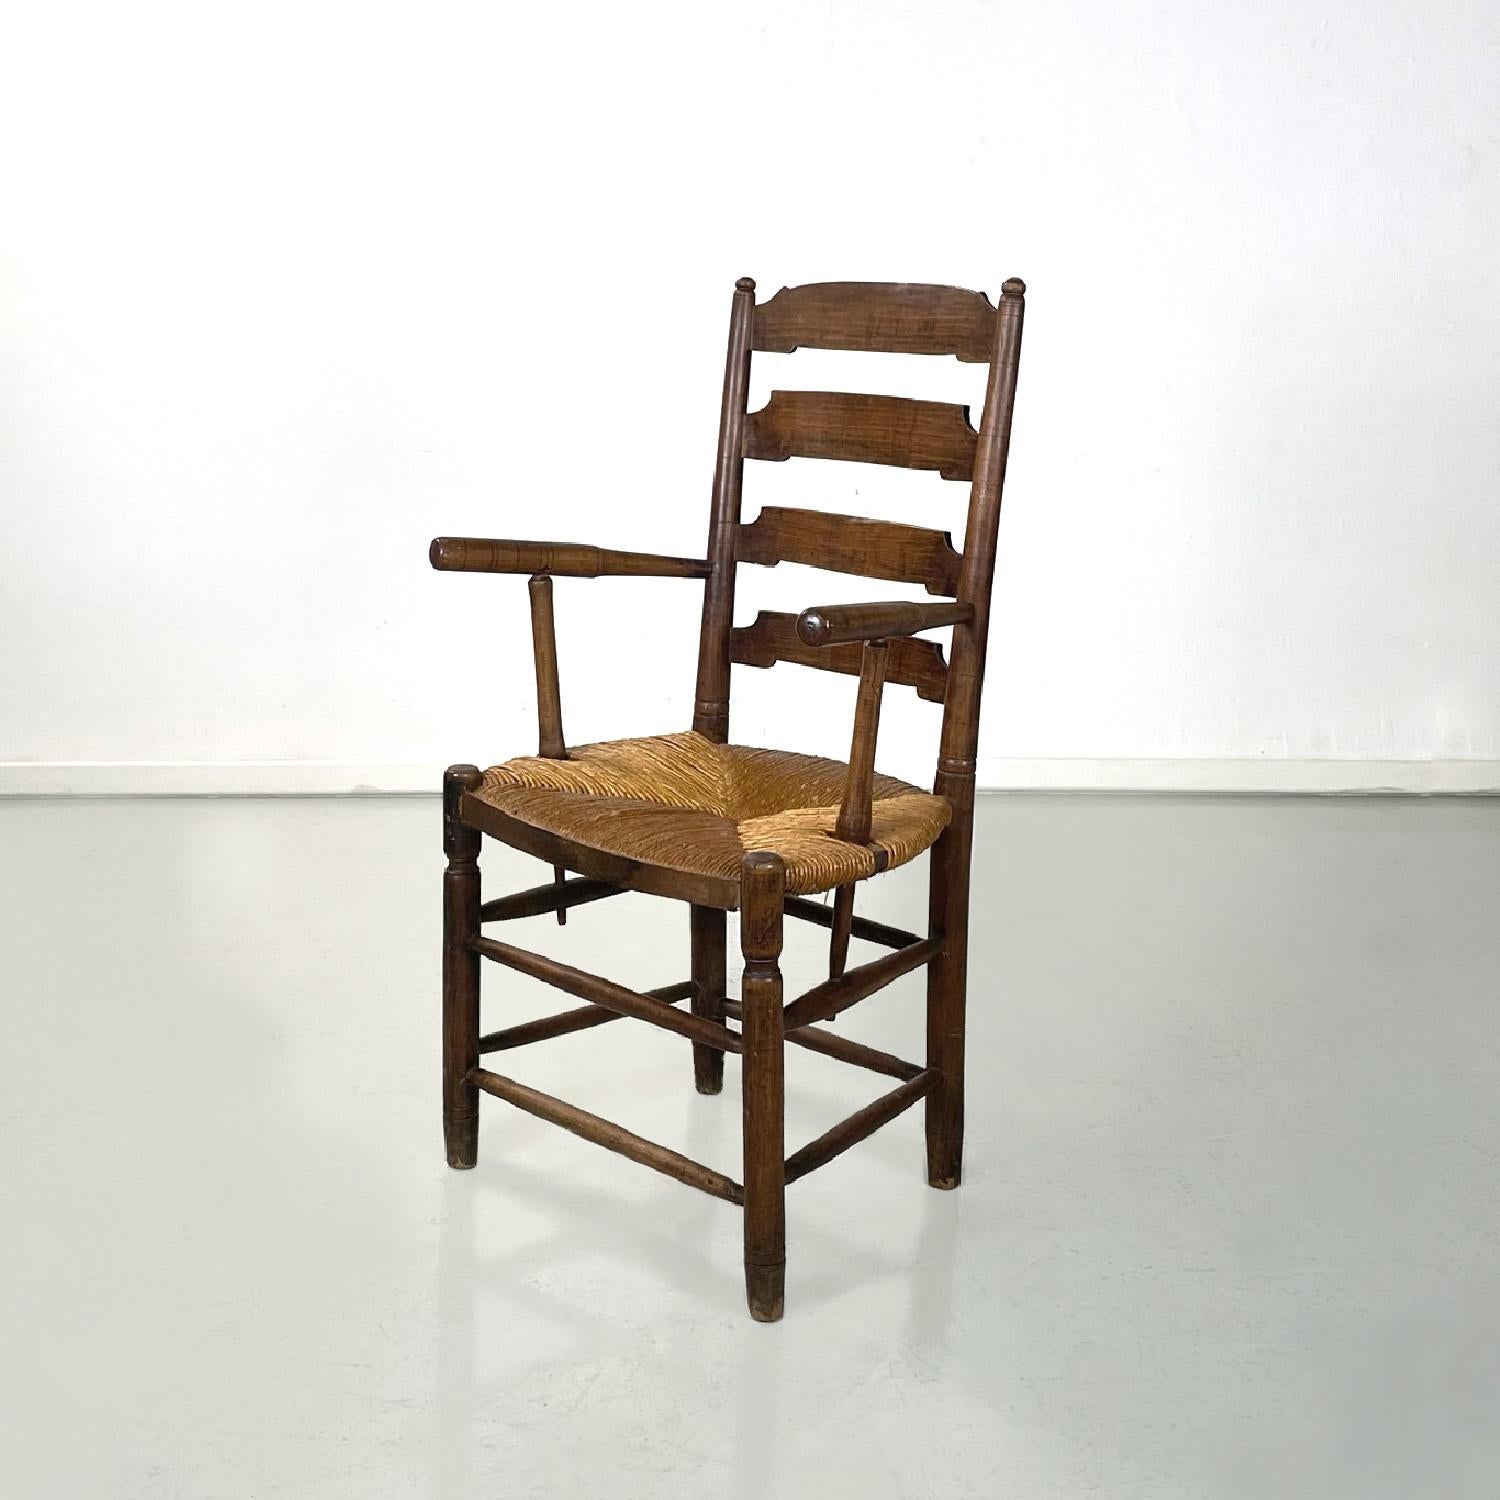 Französisch antiken Holz Eiche und Stroh Stuhl mit Armlehnen Dekorationen, Ende 1800er
Französischer Stuhl mit Armlehnen. Die Struktur ist aus Eiche und der Sitz aus Stroh. Die Rückenlehne ist hoch und hat vier geformte Stützleisten, an den Beinen